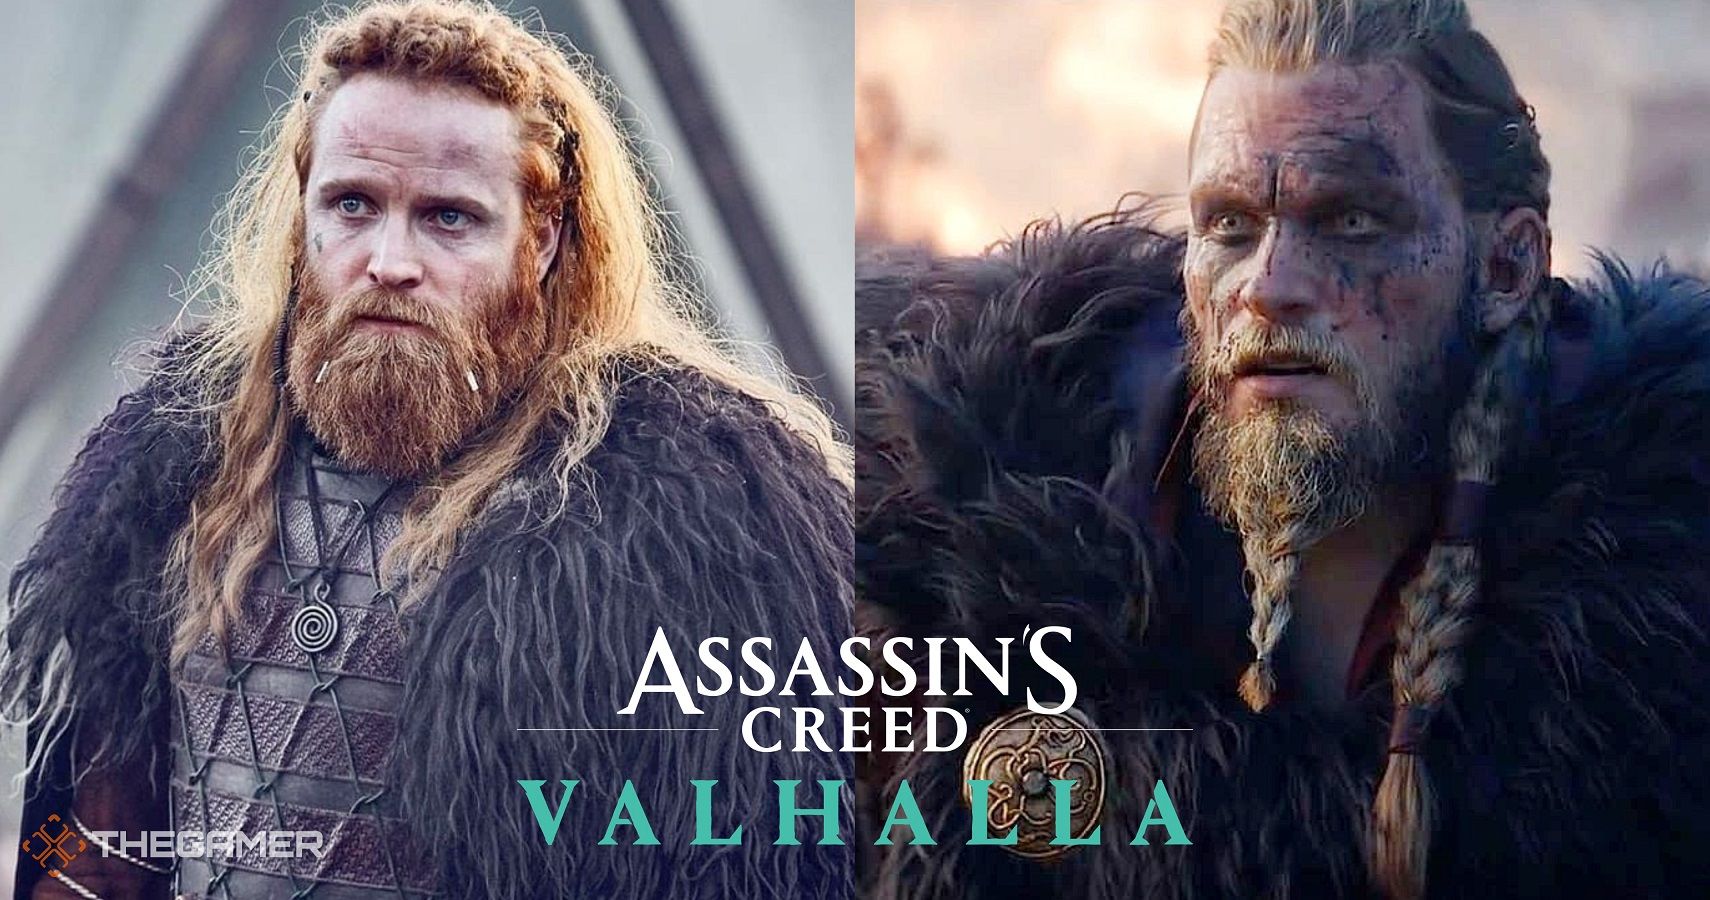 Eivor Valhalla Voice Actor Beard